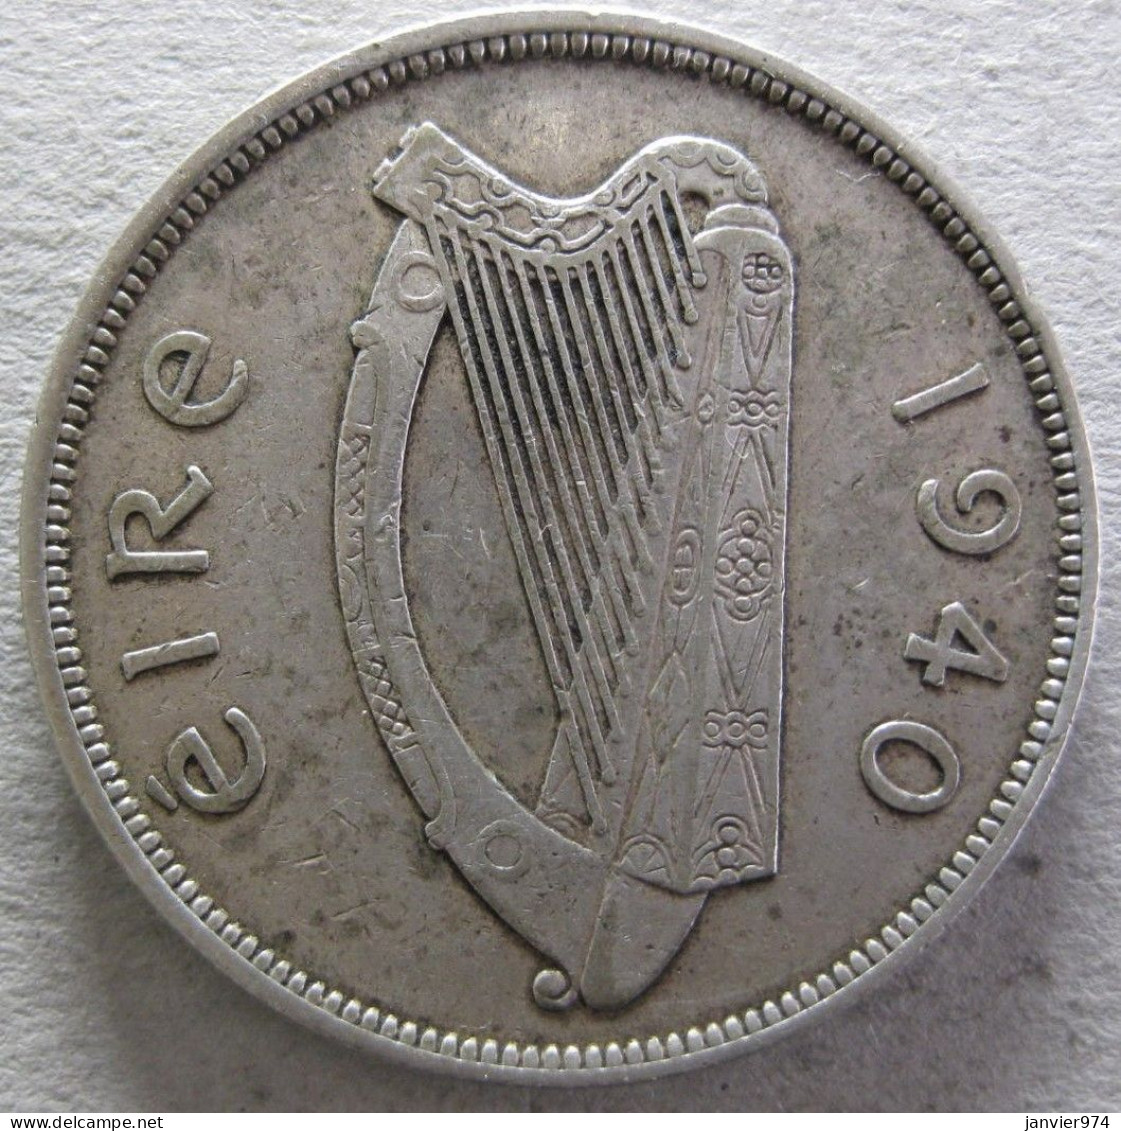 Irlande Half Crown / 2 Shillings 6 Pence 1940, En Argent , KM# 16 - Portugal